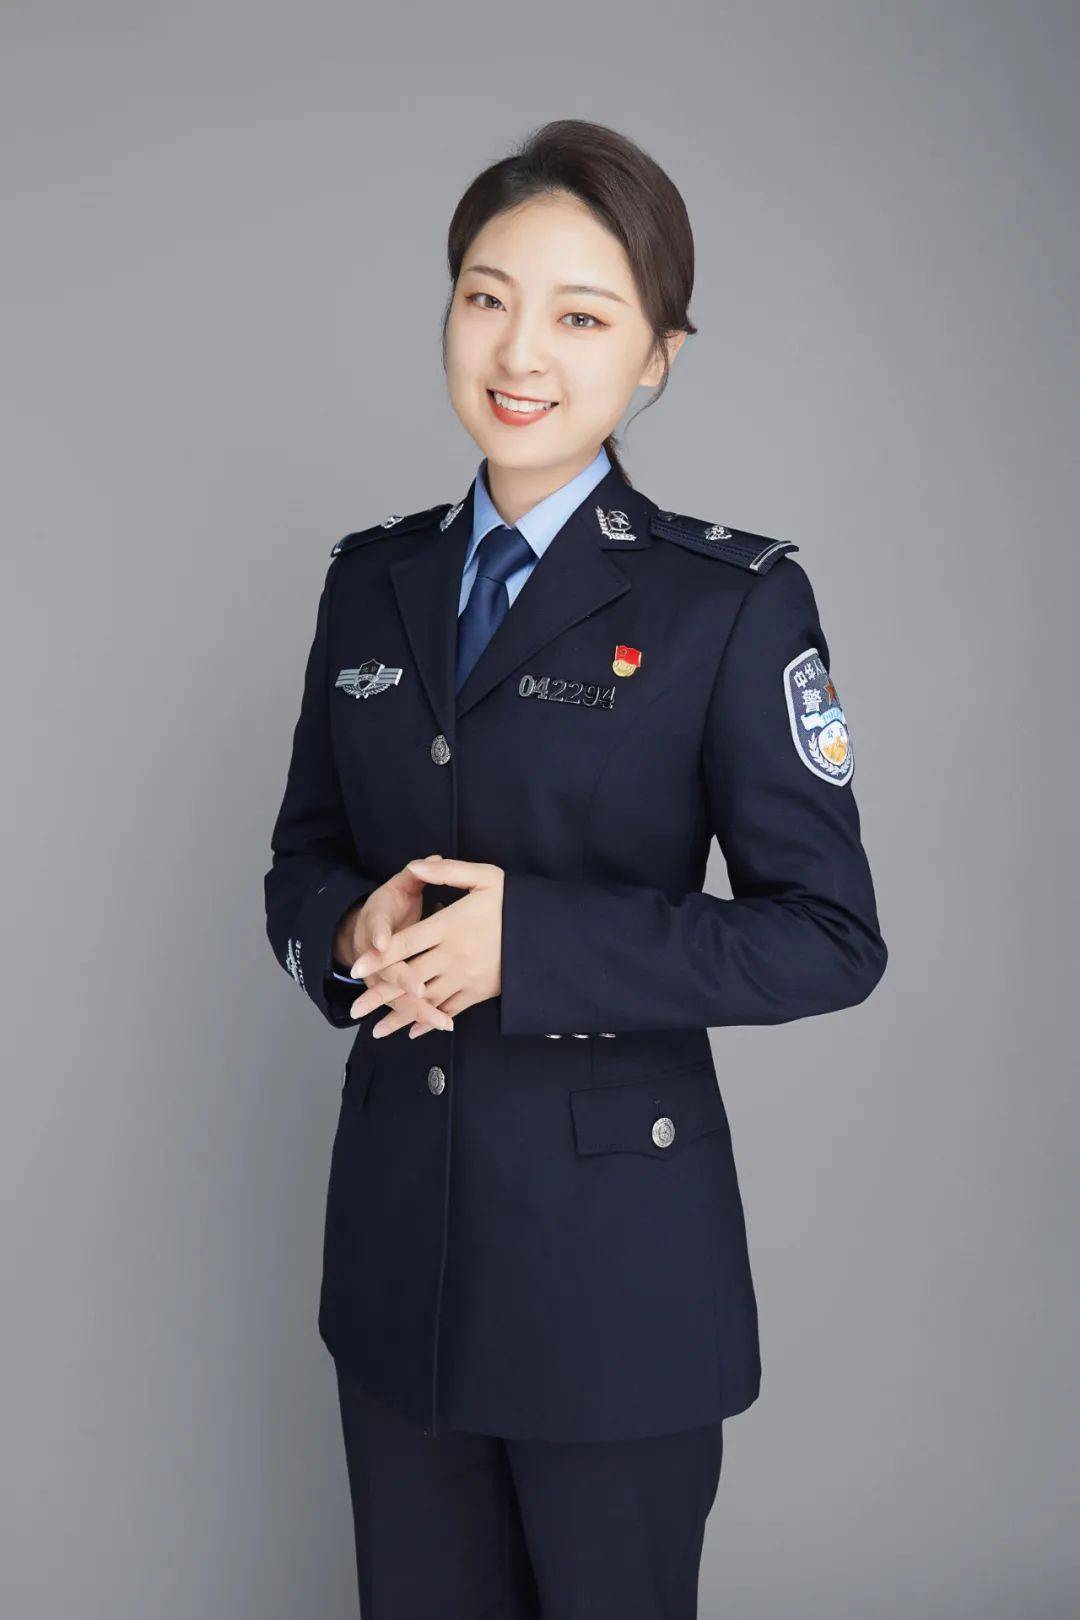 王珊,2020年参加公安工作,现为北京市公安局丰台分局反诈中心民警